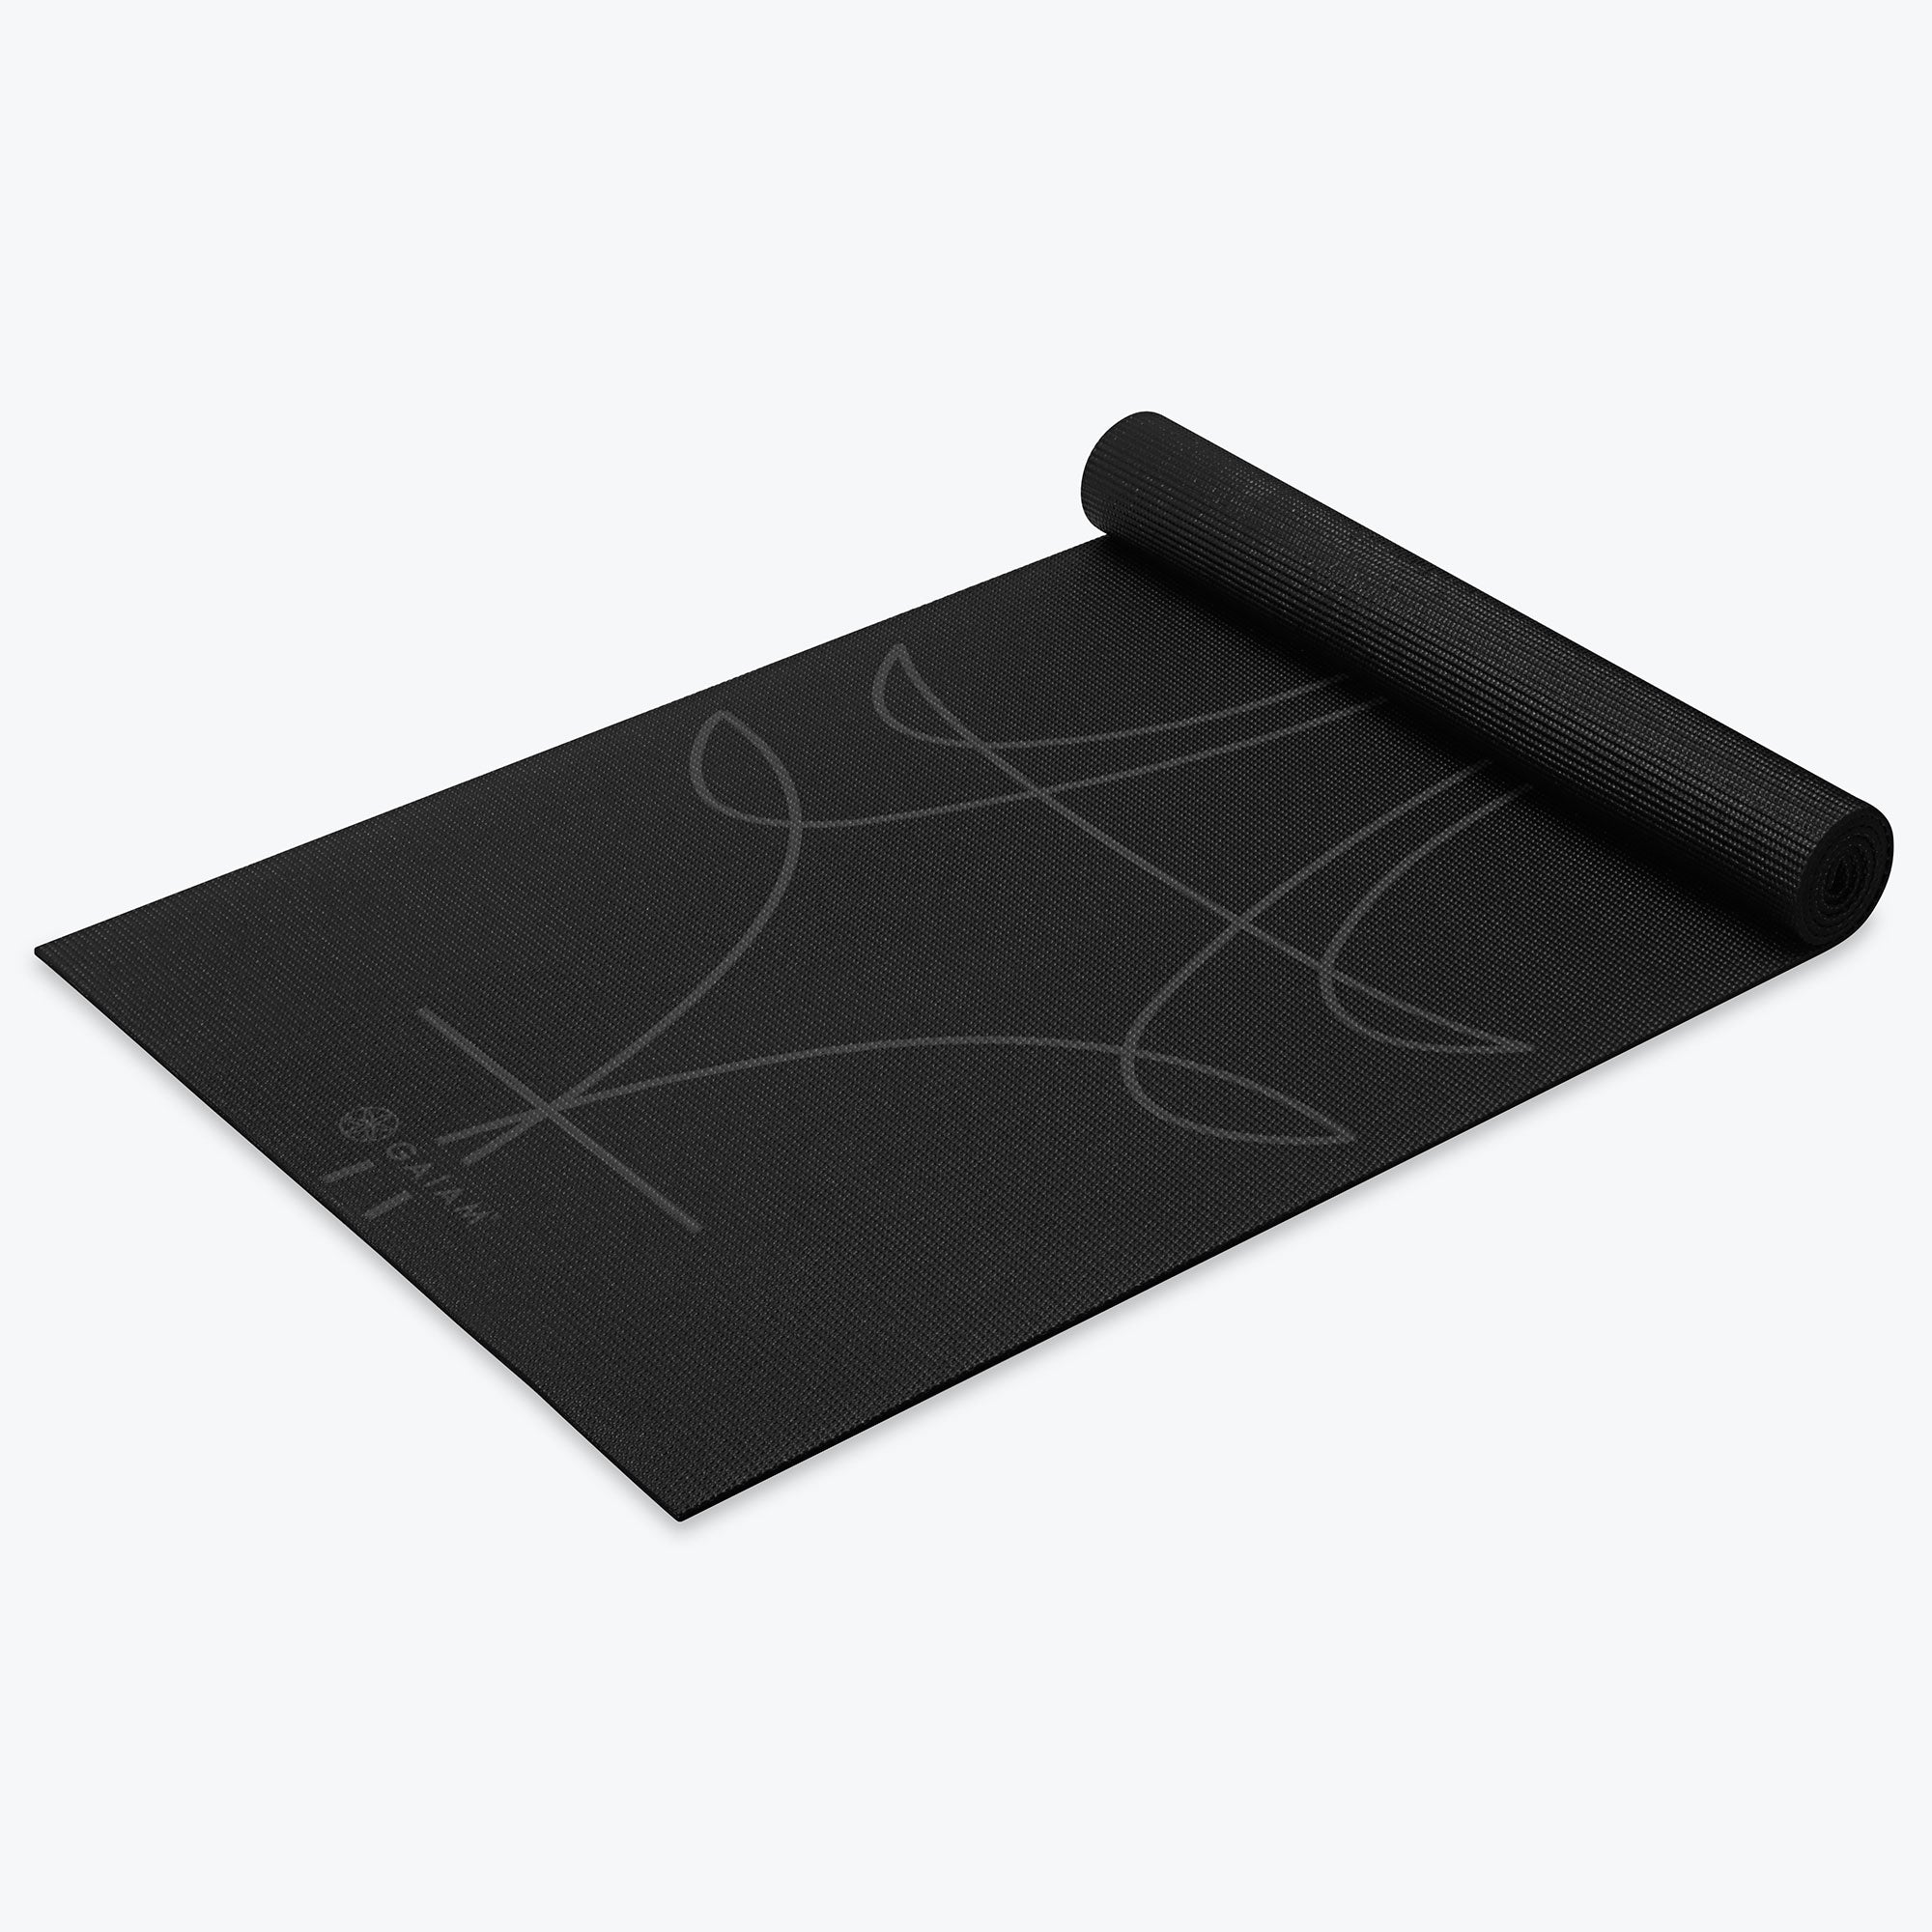 Gaiam Extra-Thick Non-Slip Yoga Mat